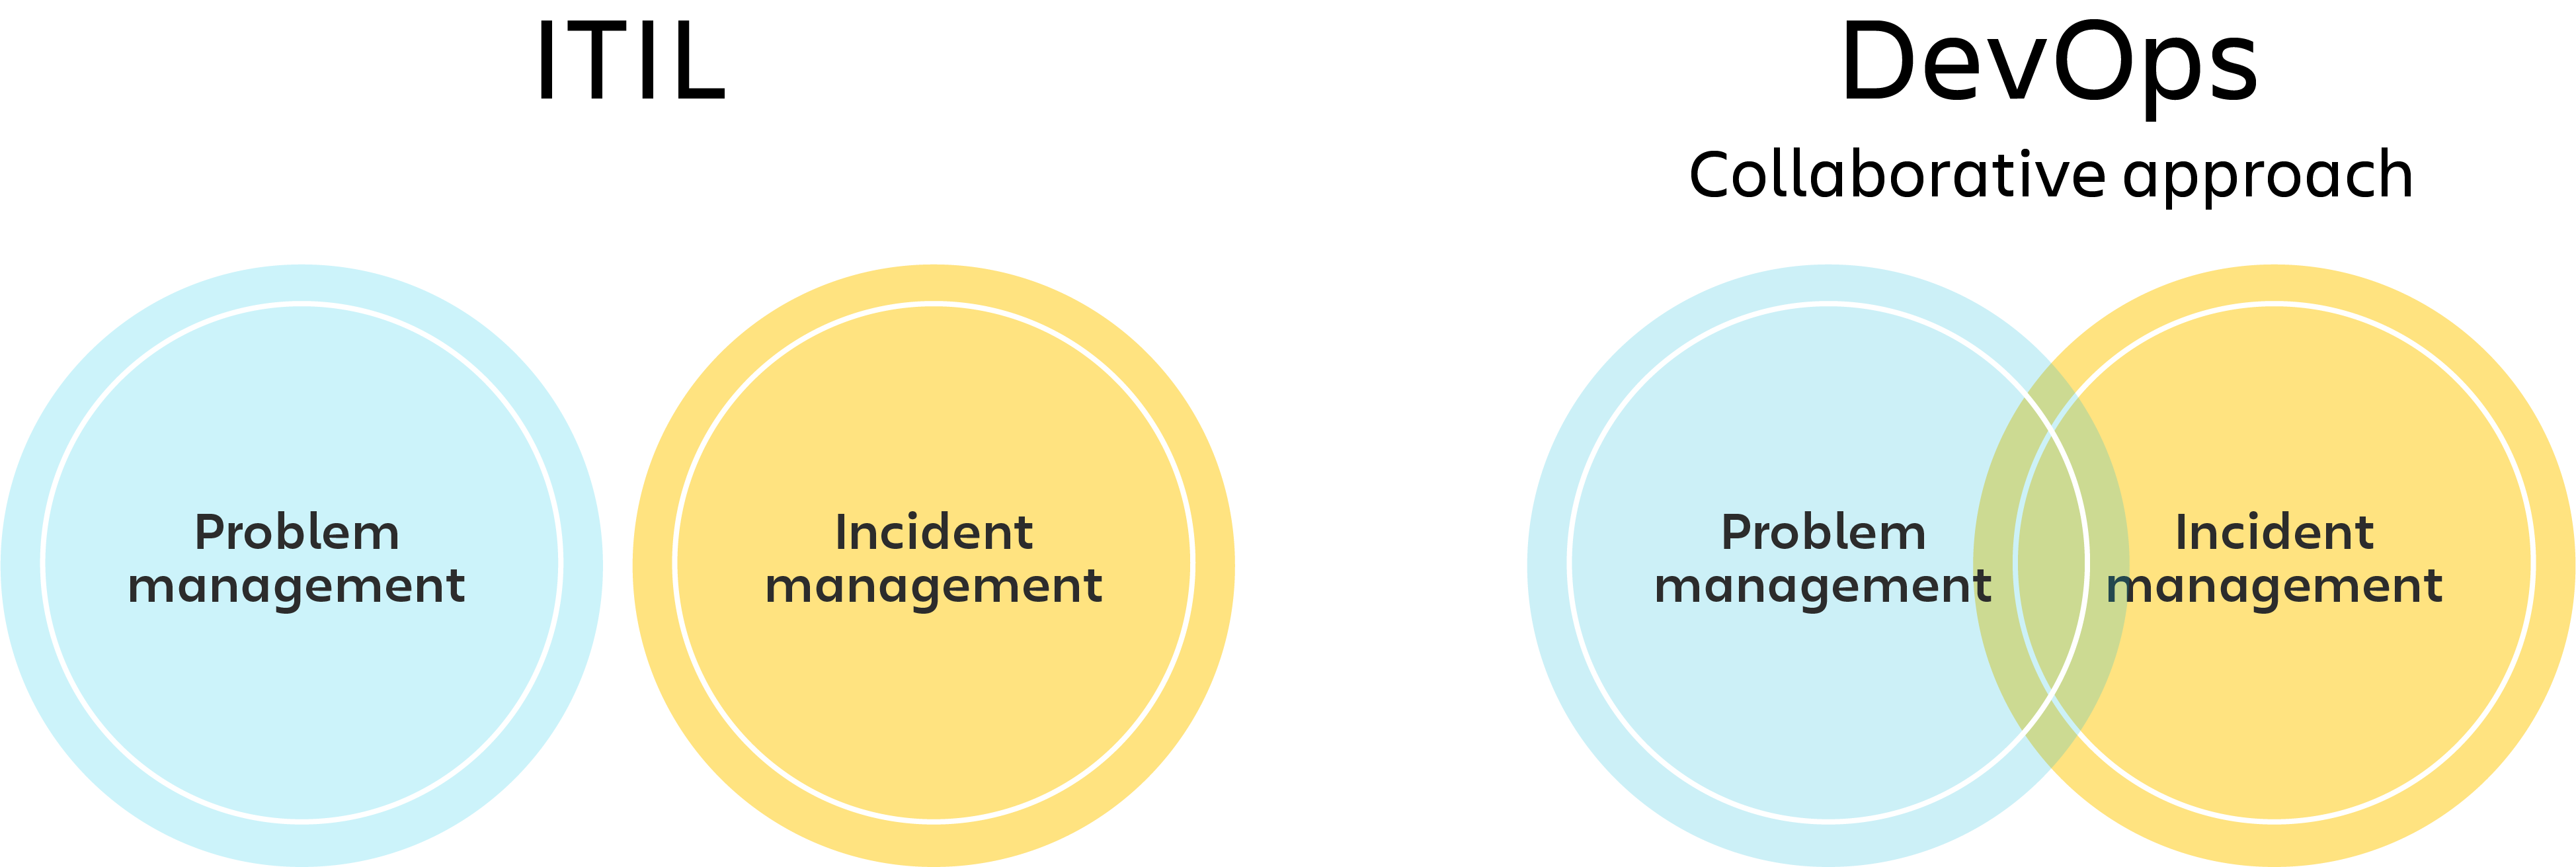 Diagramme ITIL avec des cercles séparés pour la gestion des problèmes et des incidents, et diagramme DevOps avec diagramme de Venn pour la gestion des problèmes et des incidents